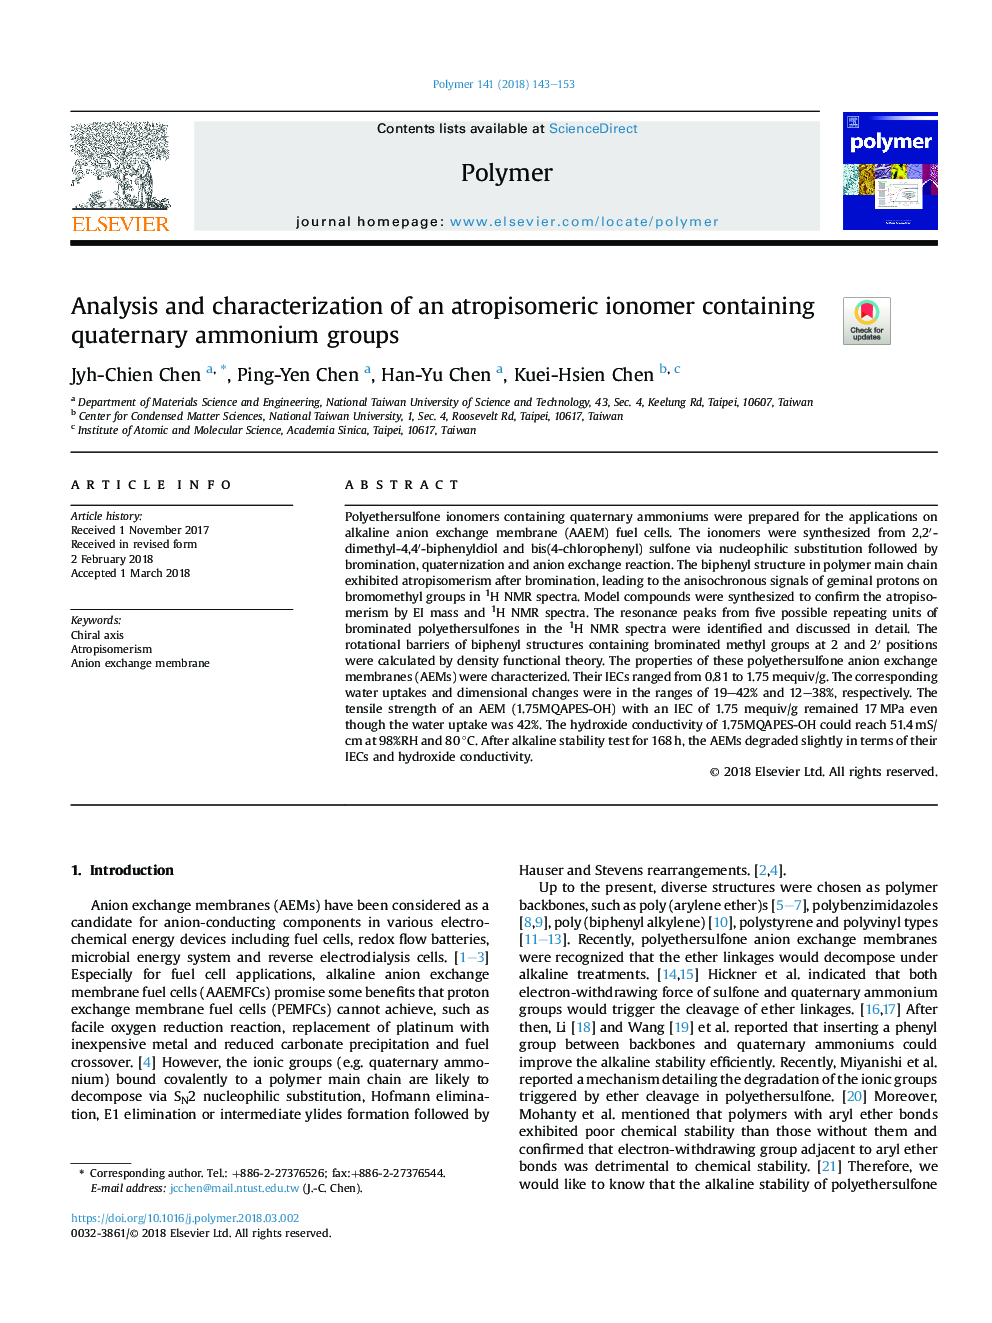 تجزیه و تحلیل و مشخص کردن یک آینومر آتروپیزومریک که شامل گروه های آمونیوم کواترنری است 